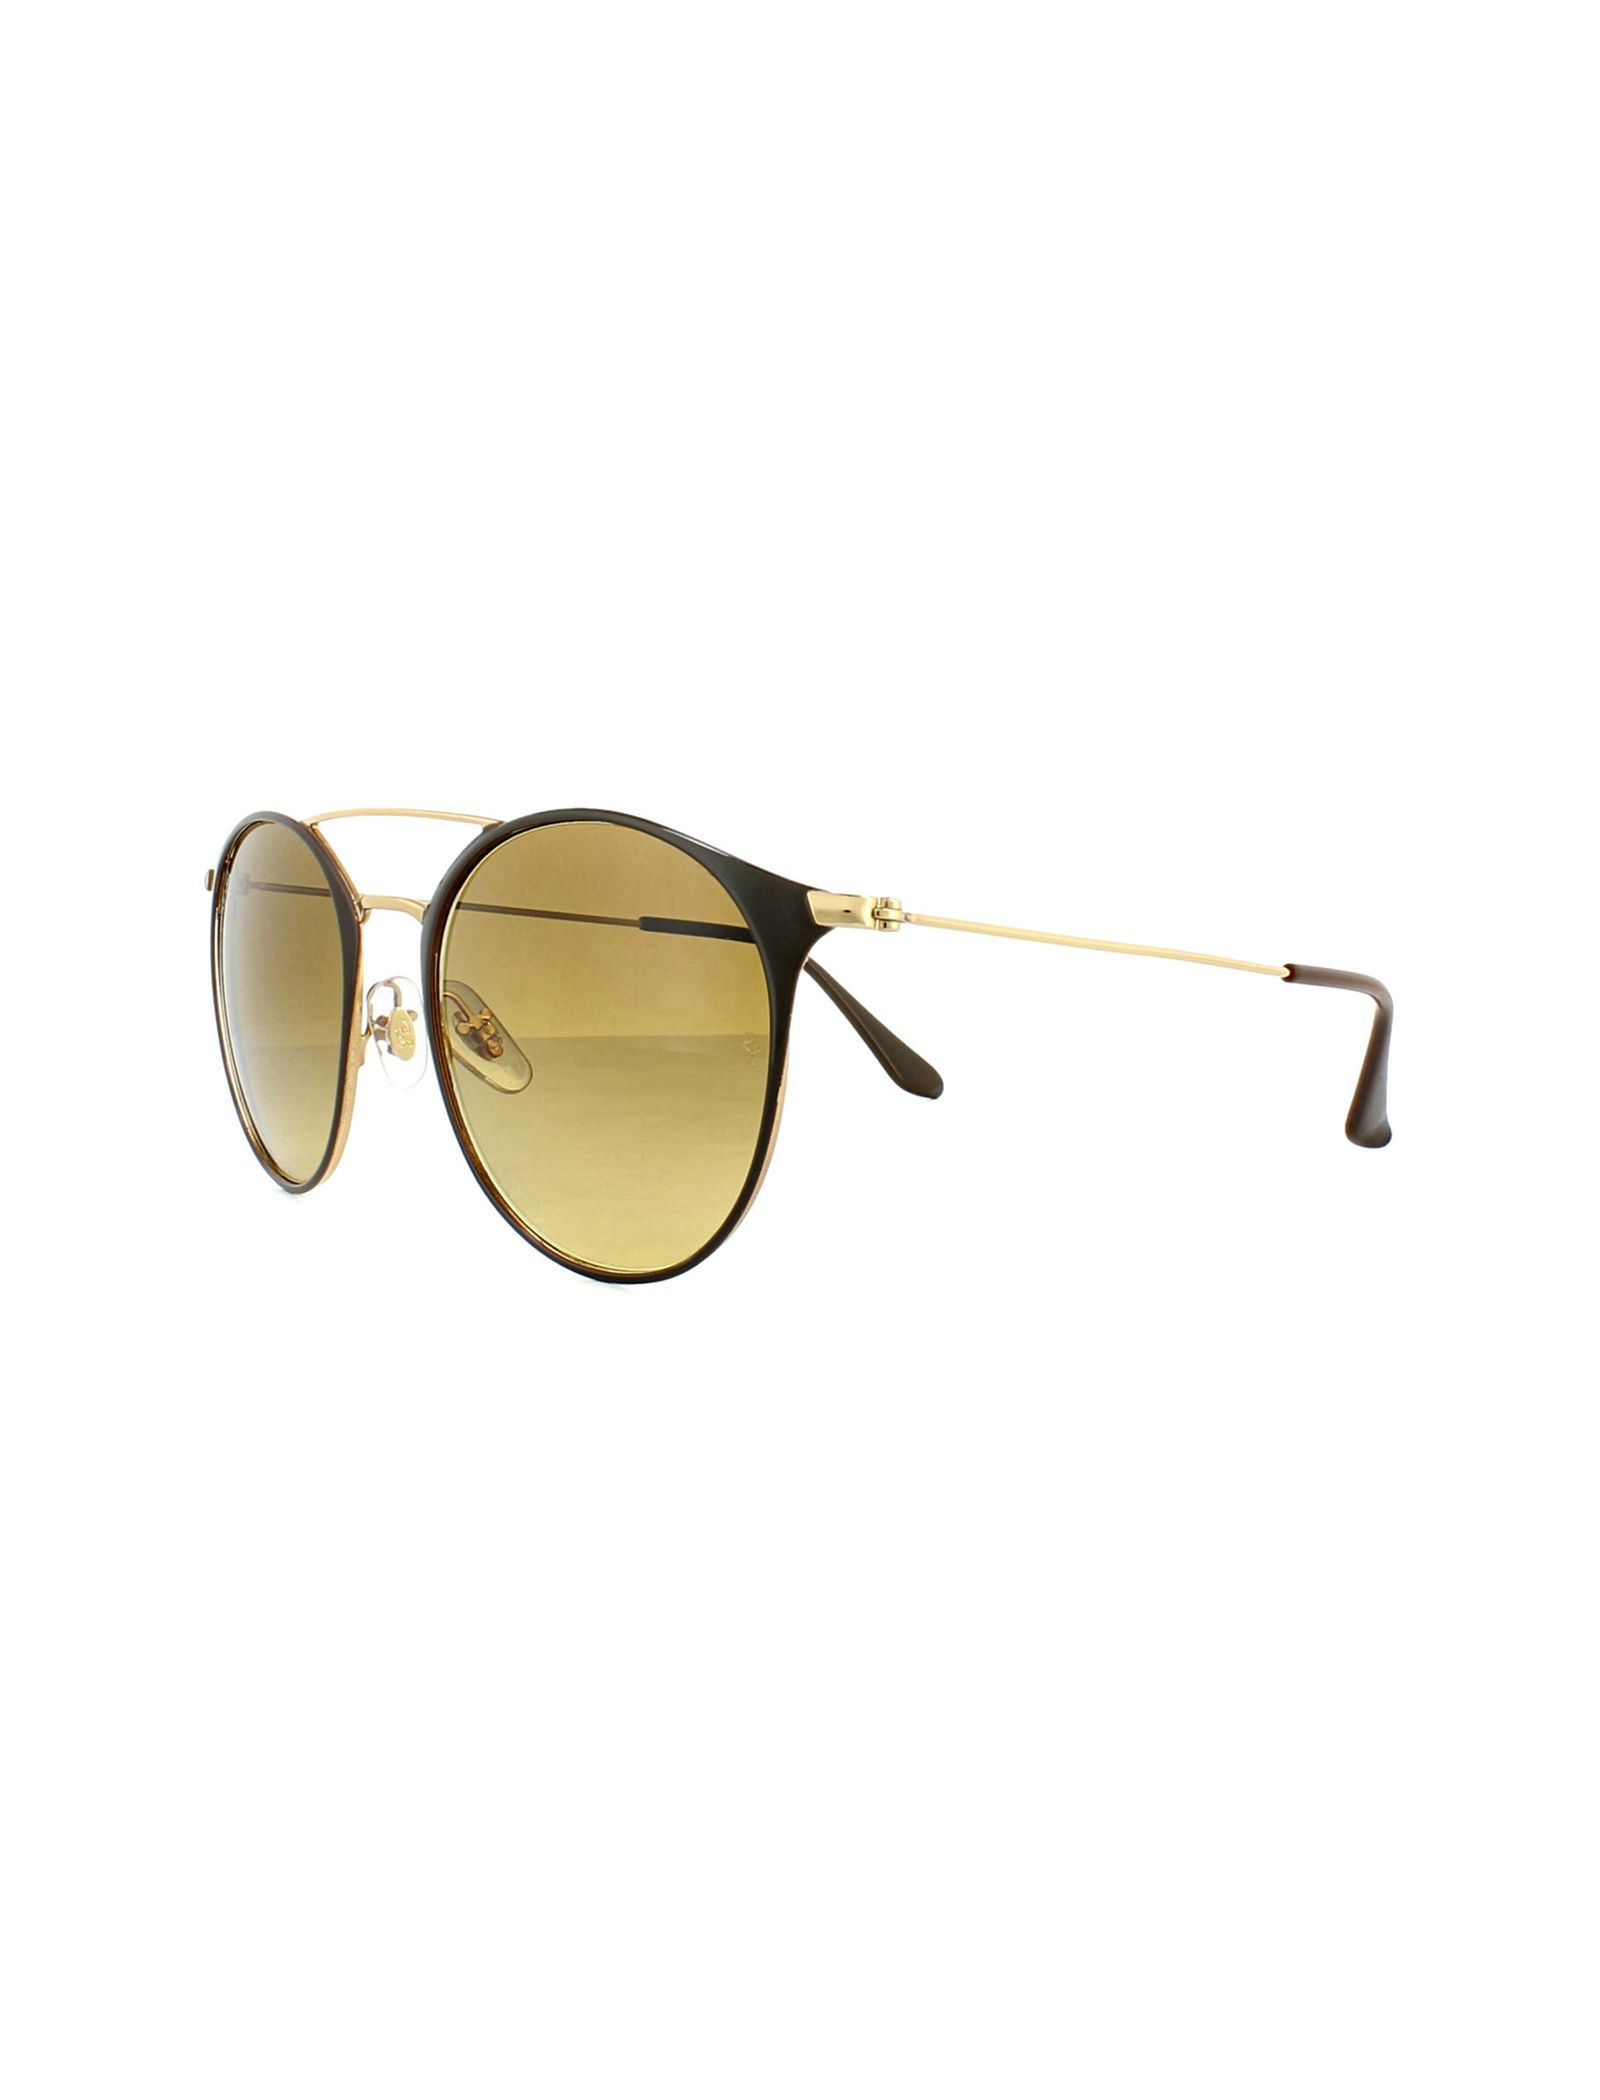 عینک آفتابی ری بن مدل 3546-900985 - طلایی - 5